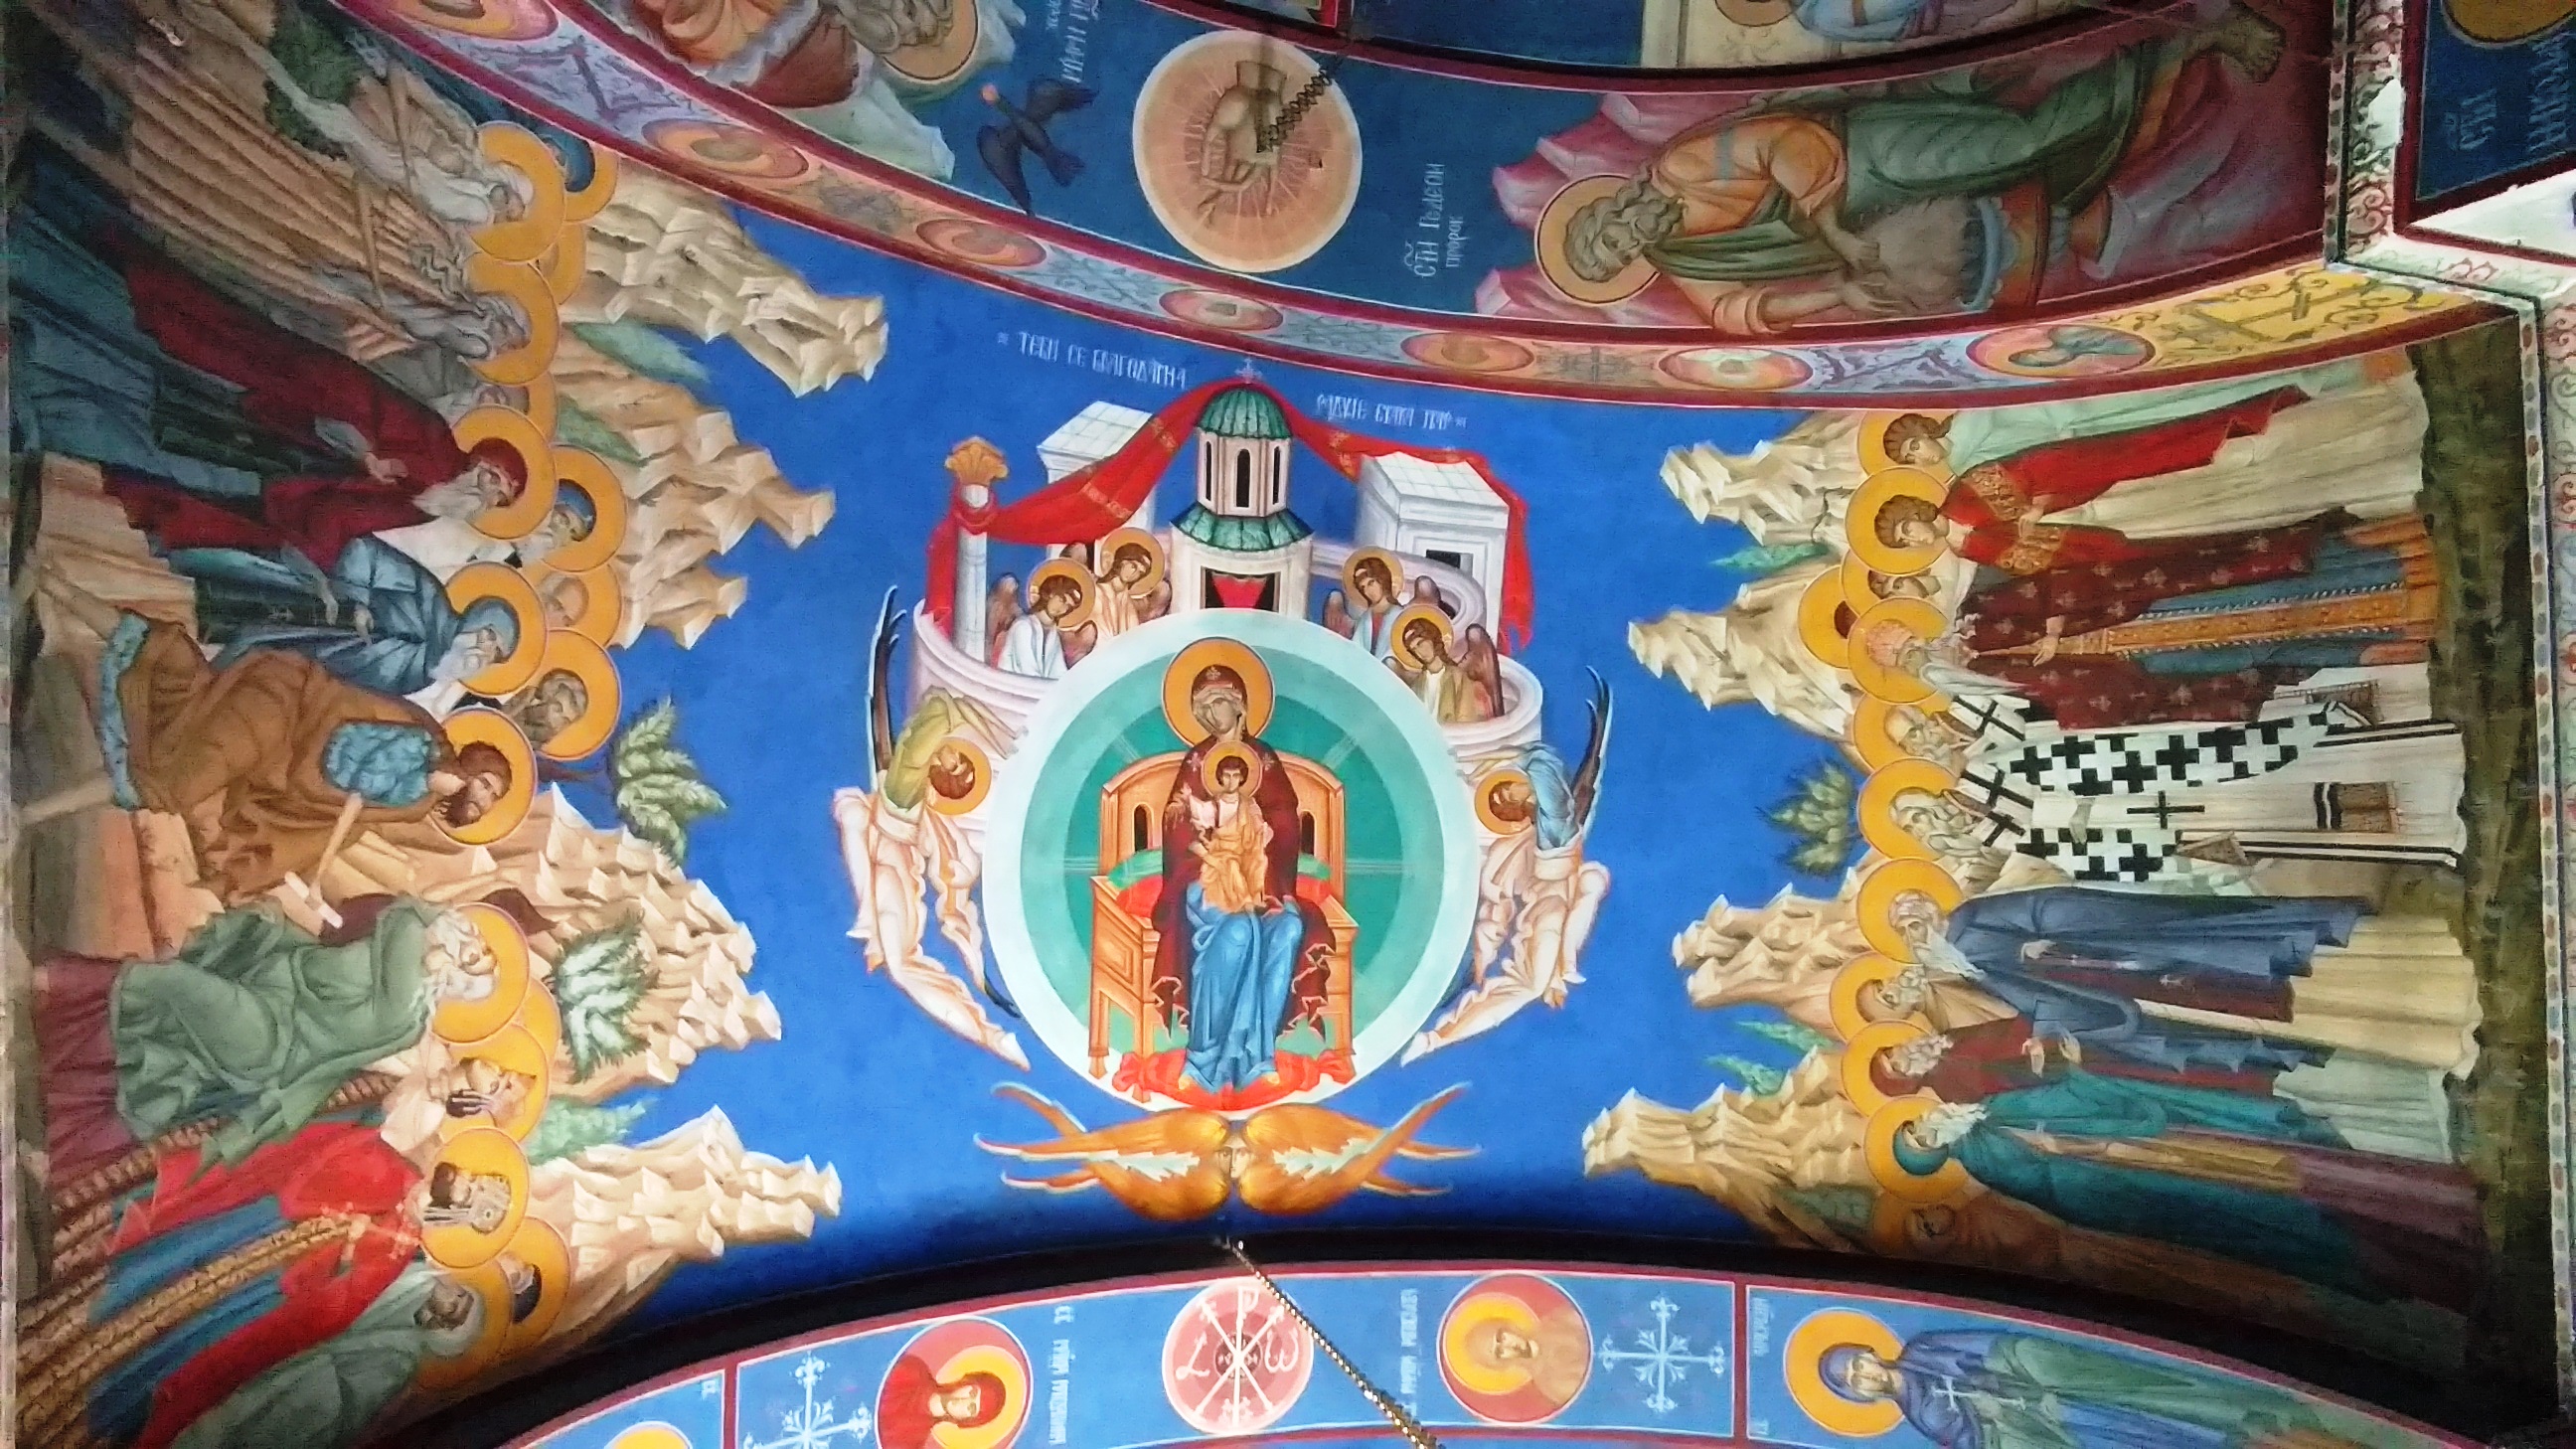 Žitomislić Monastery_20180628_150910054